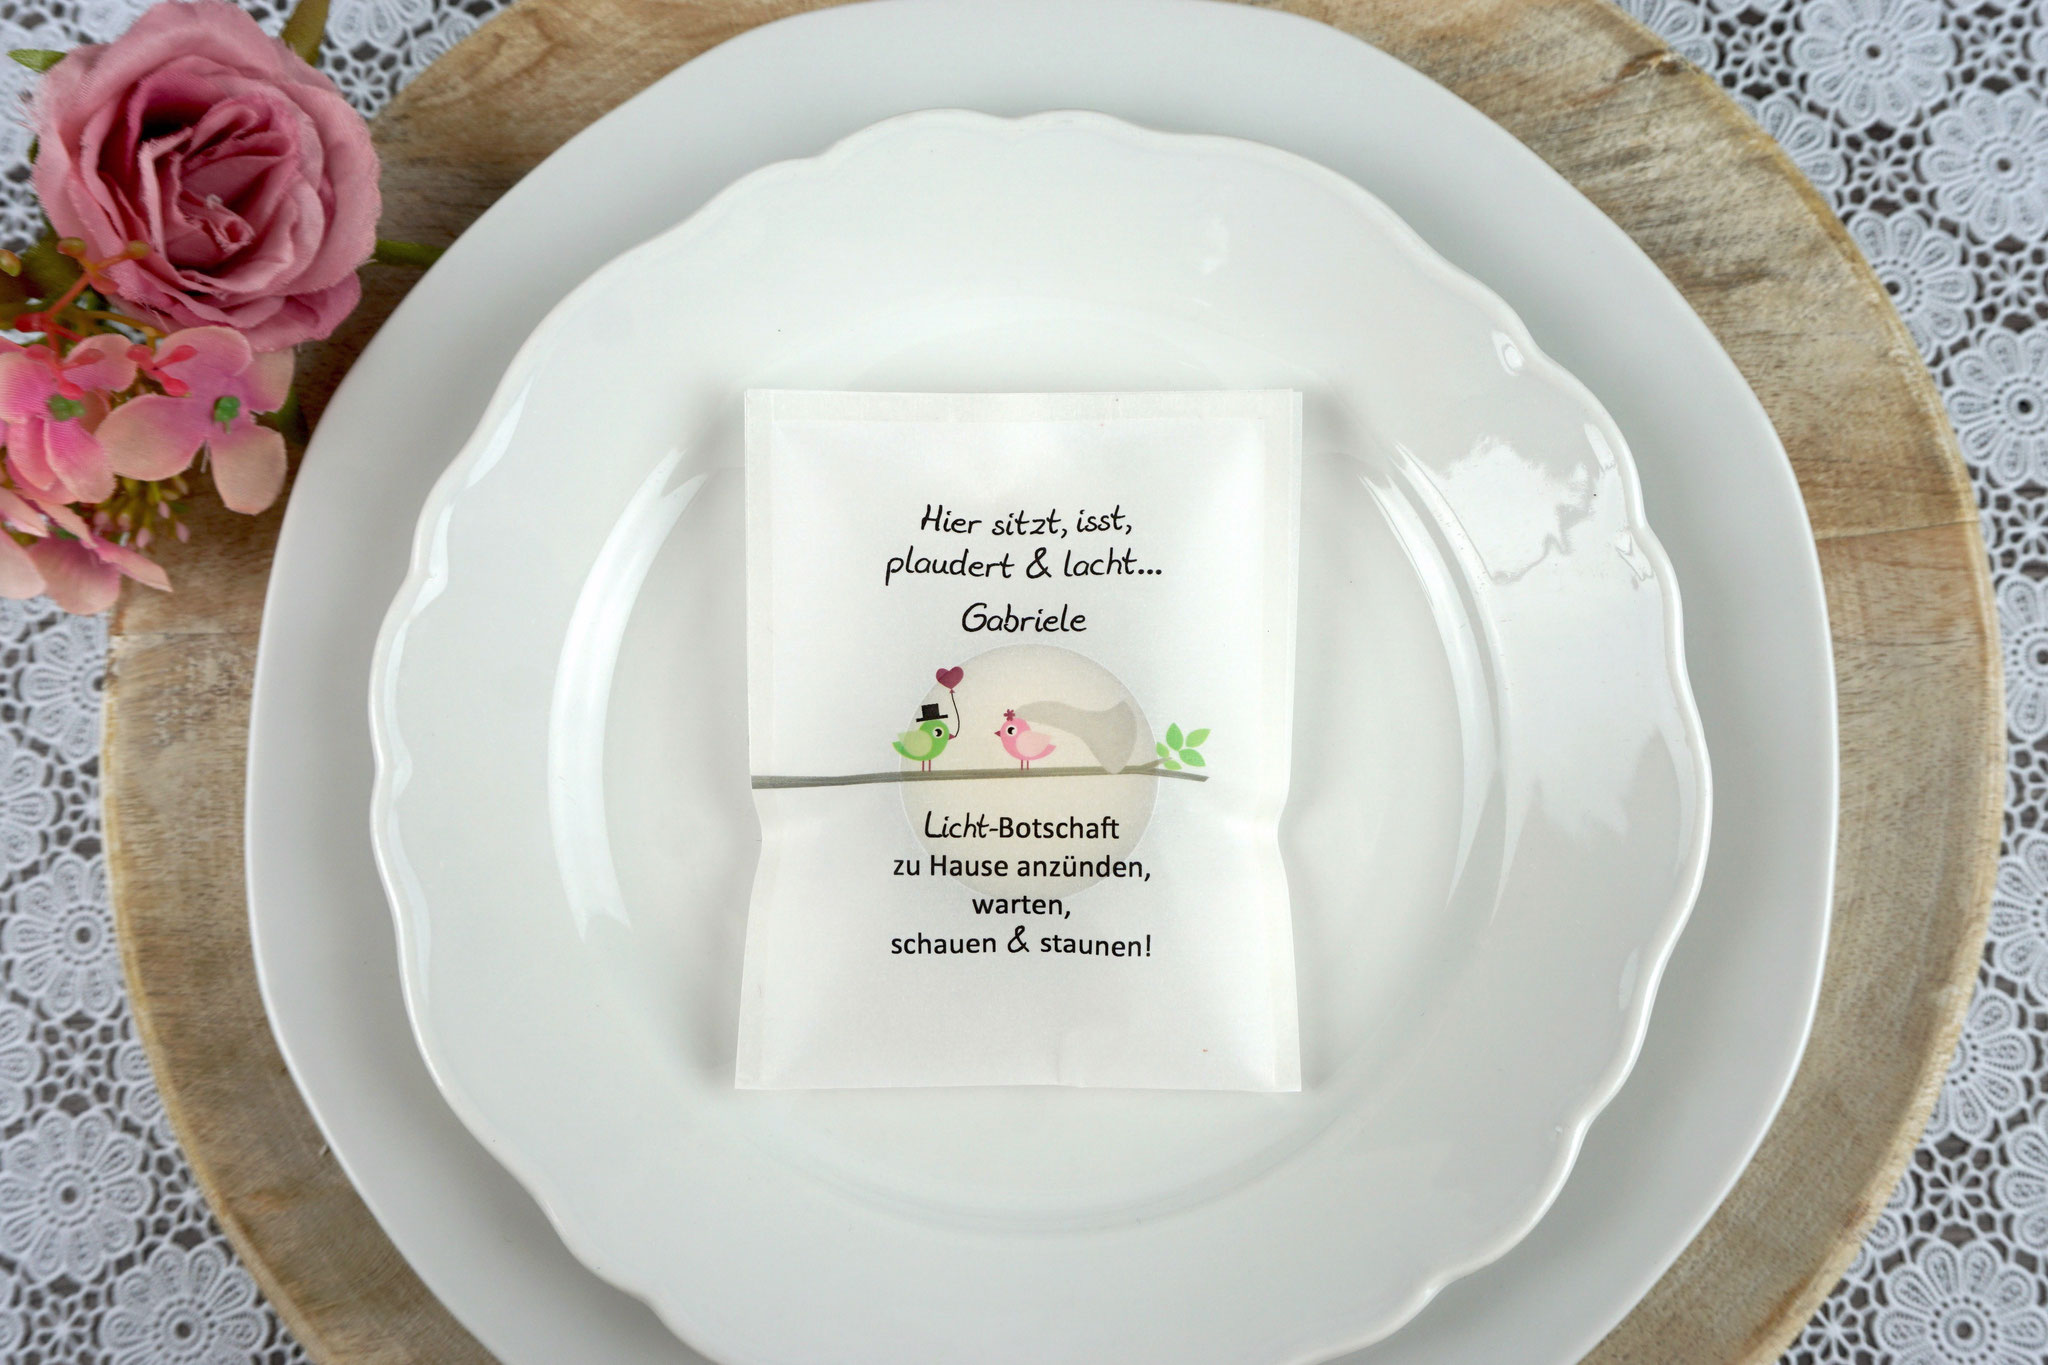 Licht-Botschaft Design "Hochzeitsvögel auf Ast", Farbe Grün/Rosa, "Verpackung als Platzkarte"